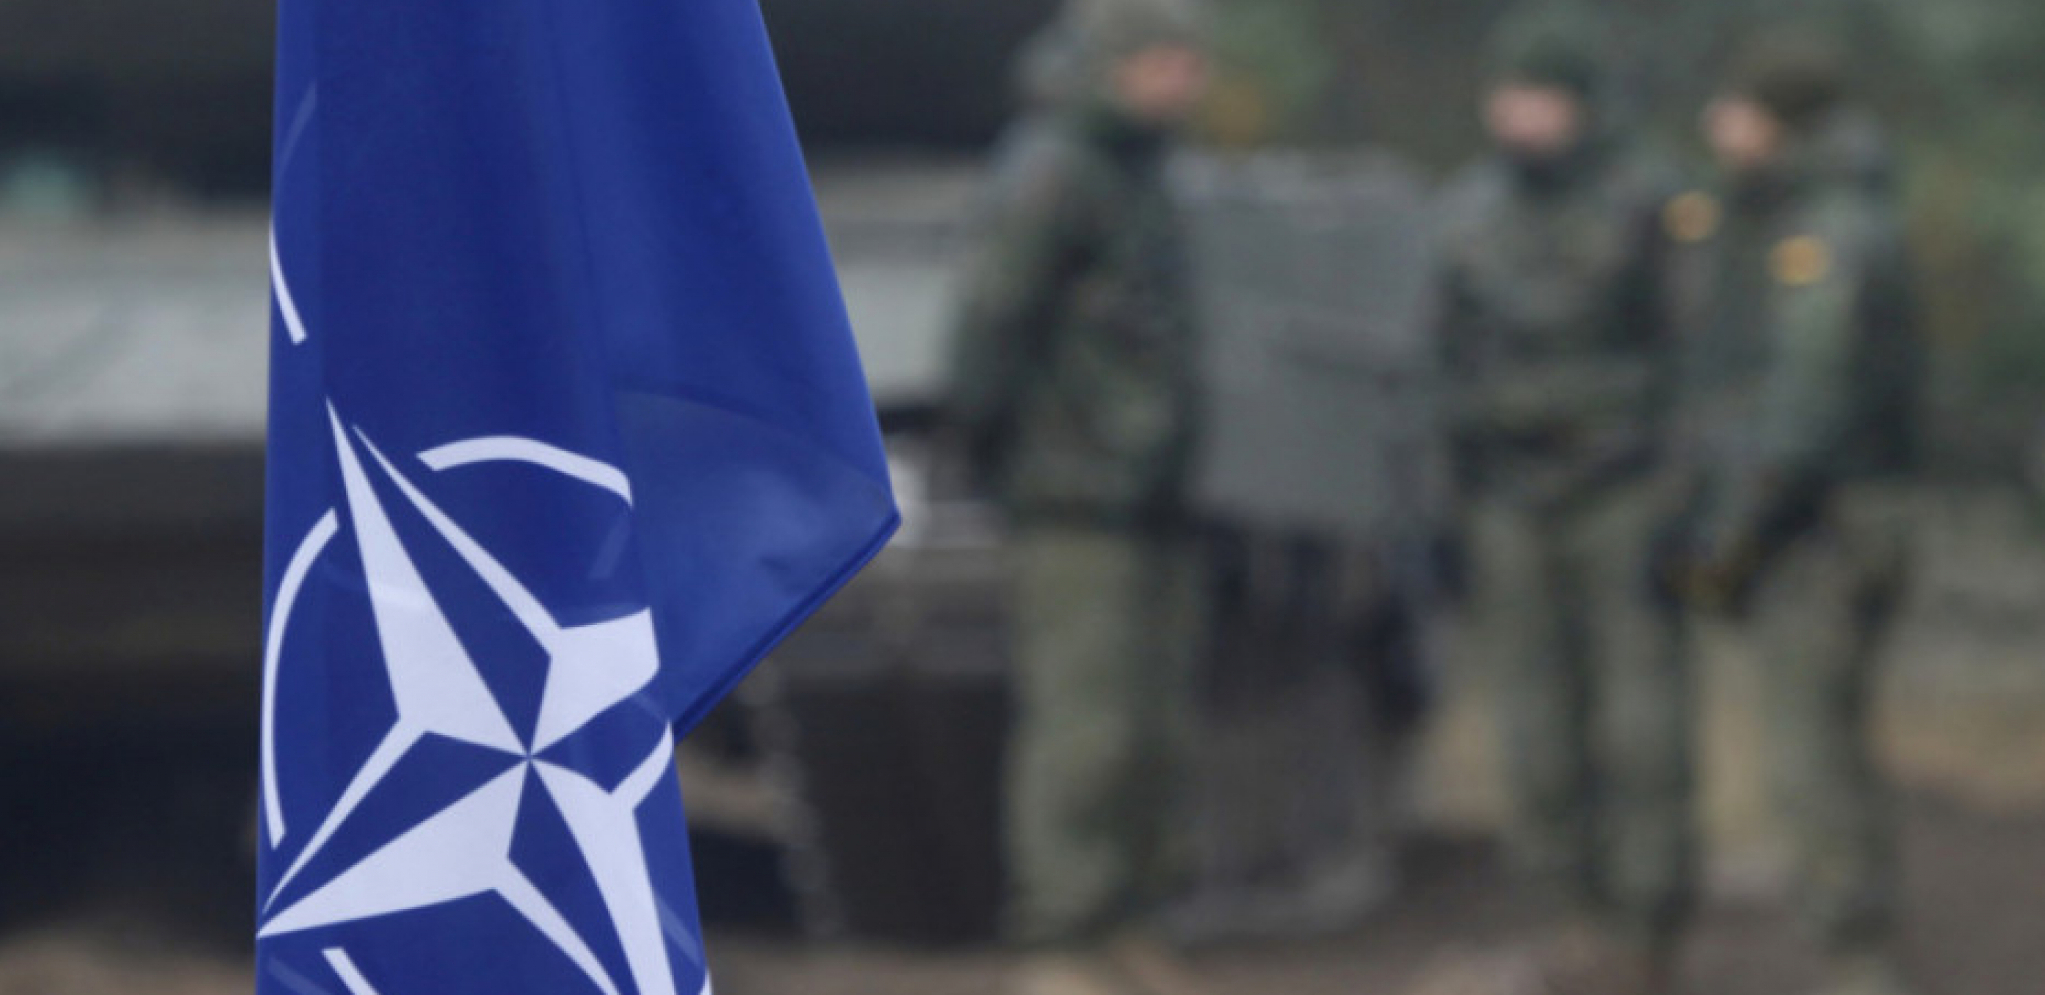 DESNA RUKA SERGEJA LAVROVA POPLJUVAO NATO Nameću teme iz Hladnog rata, to je žalosno!